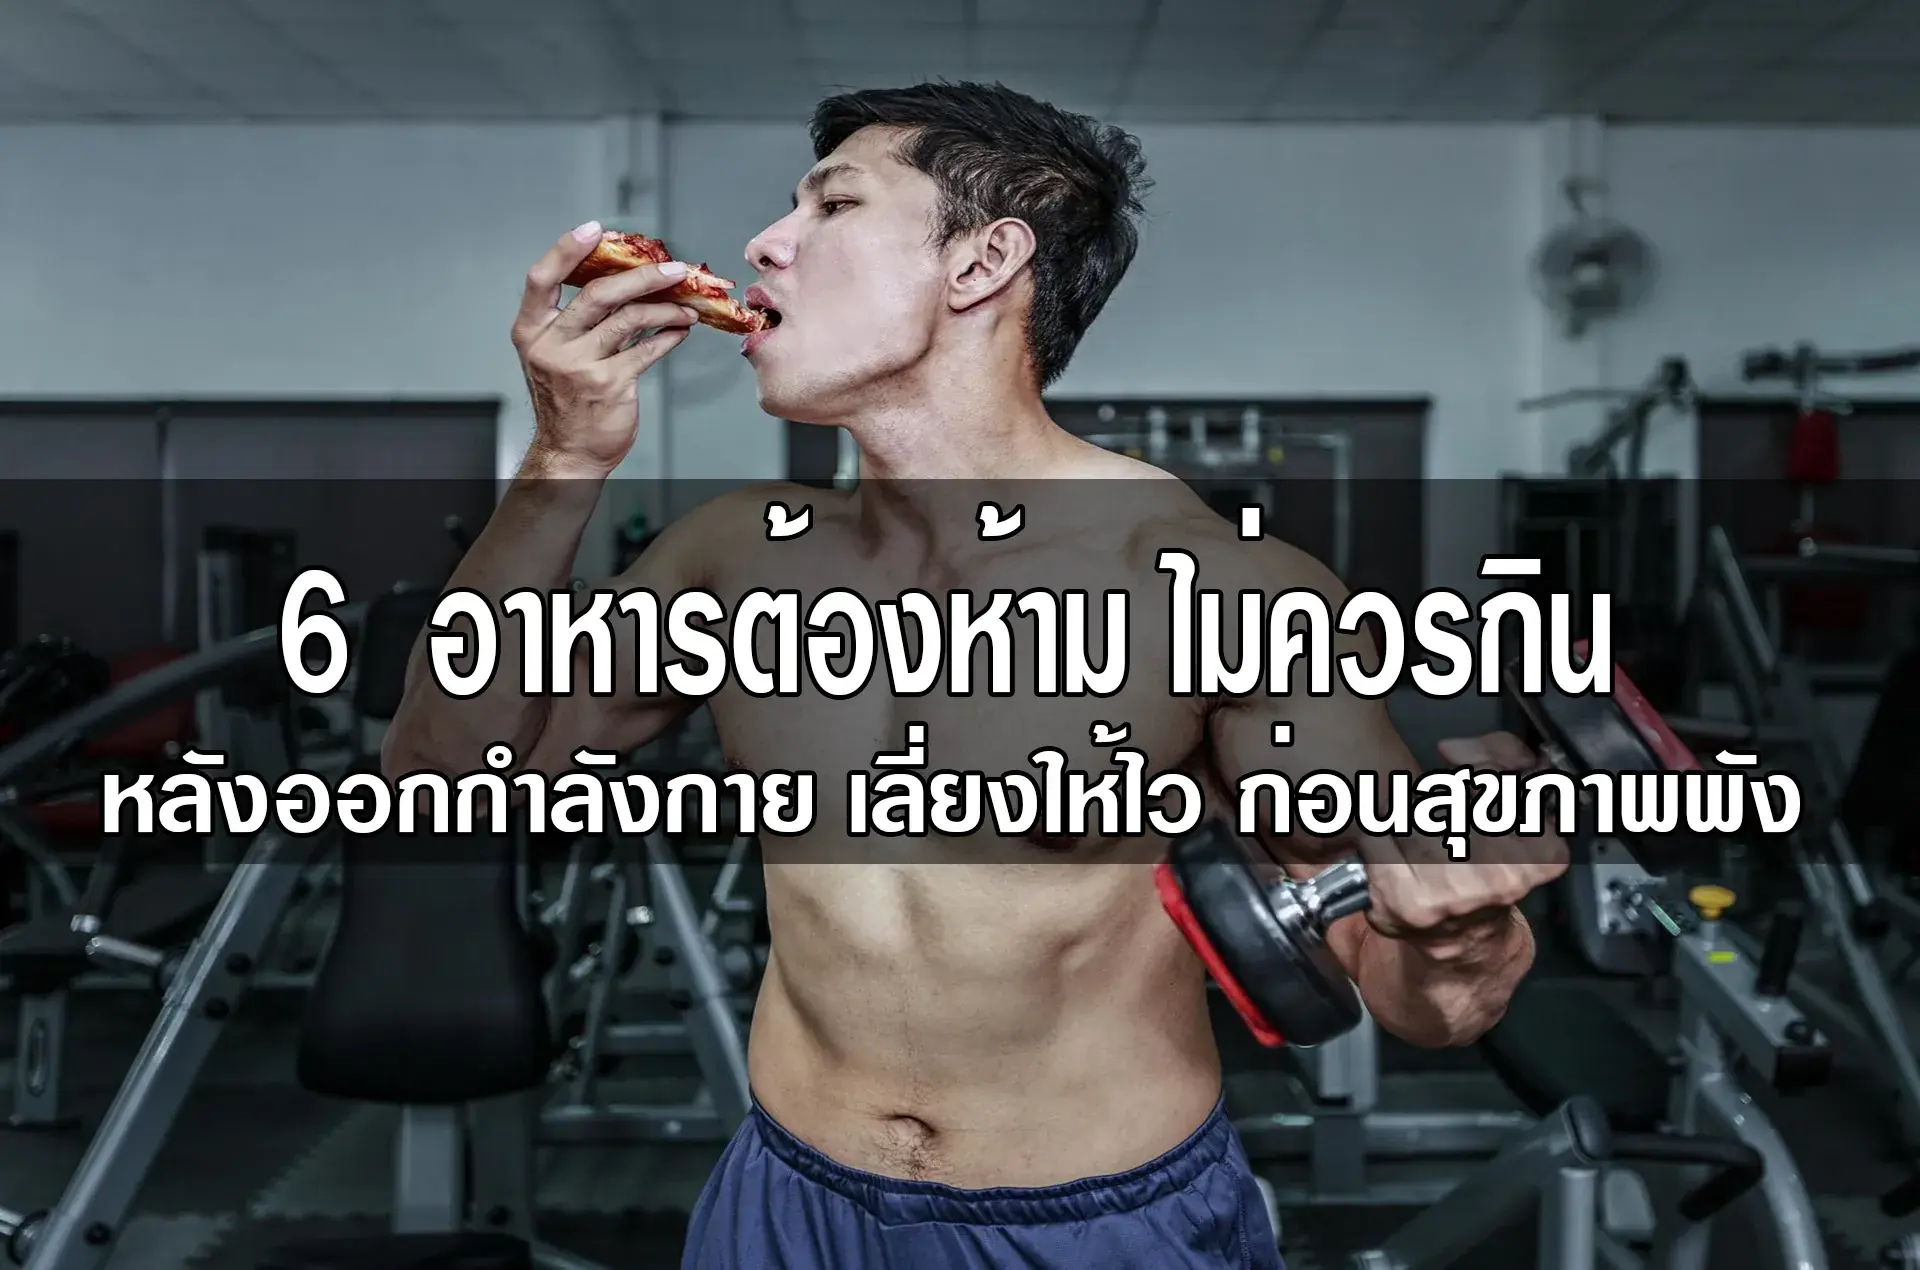 6 อาหารต้องห้าม ไม่ควรกินหลังออกกำลังกาย เลี่ยงให้ไว ก่อนสุขภาพพัง